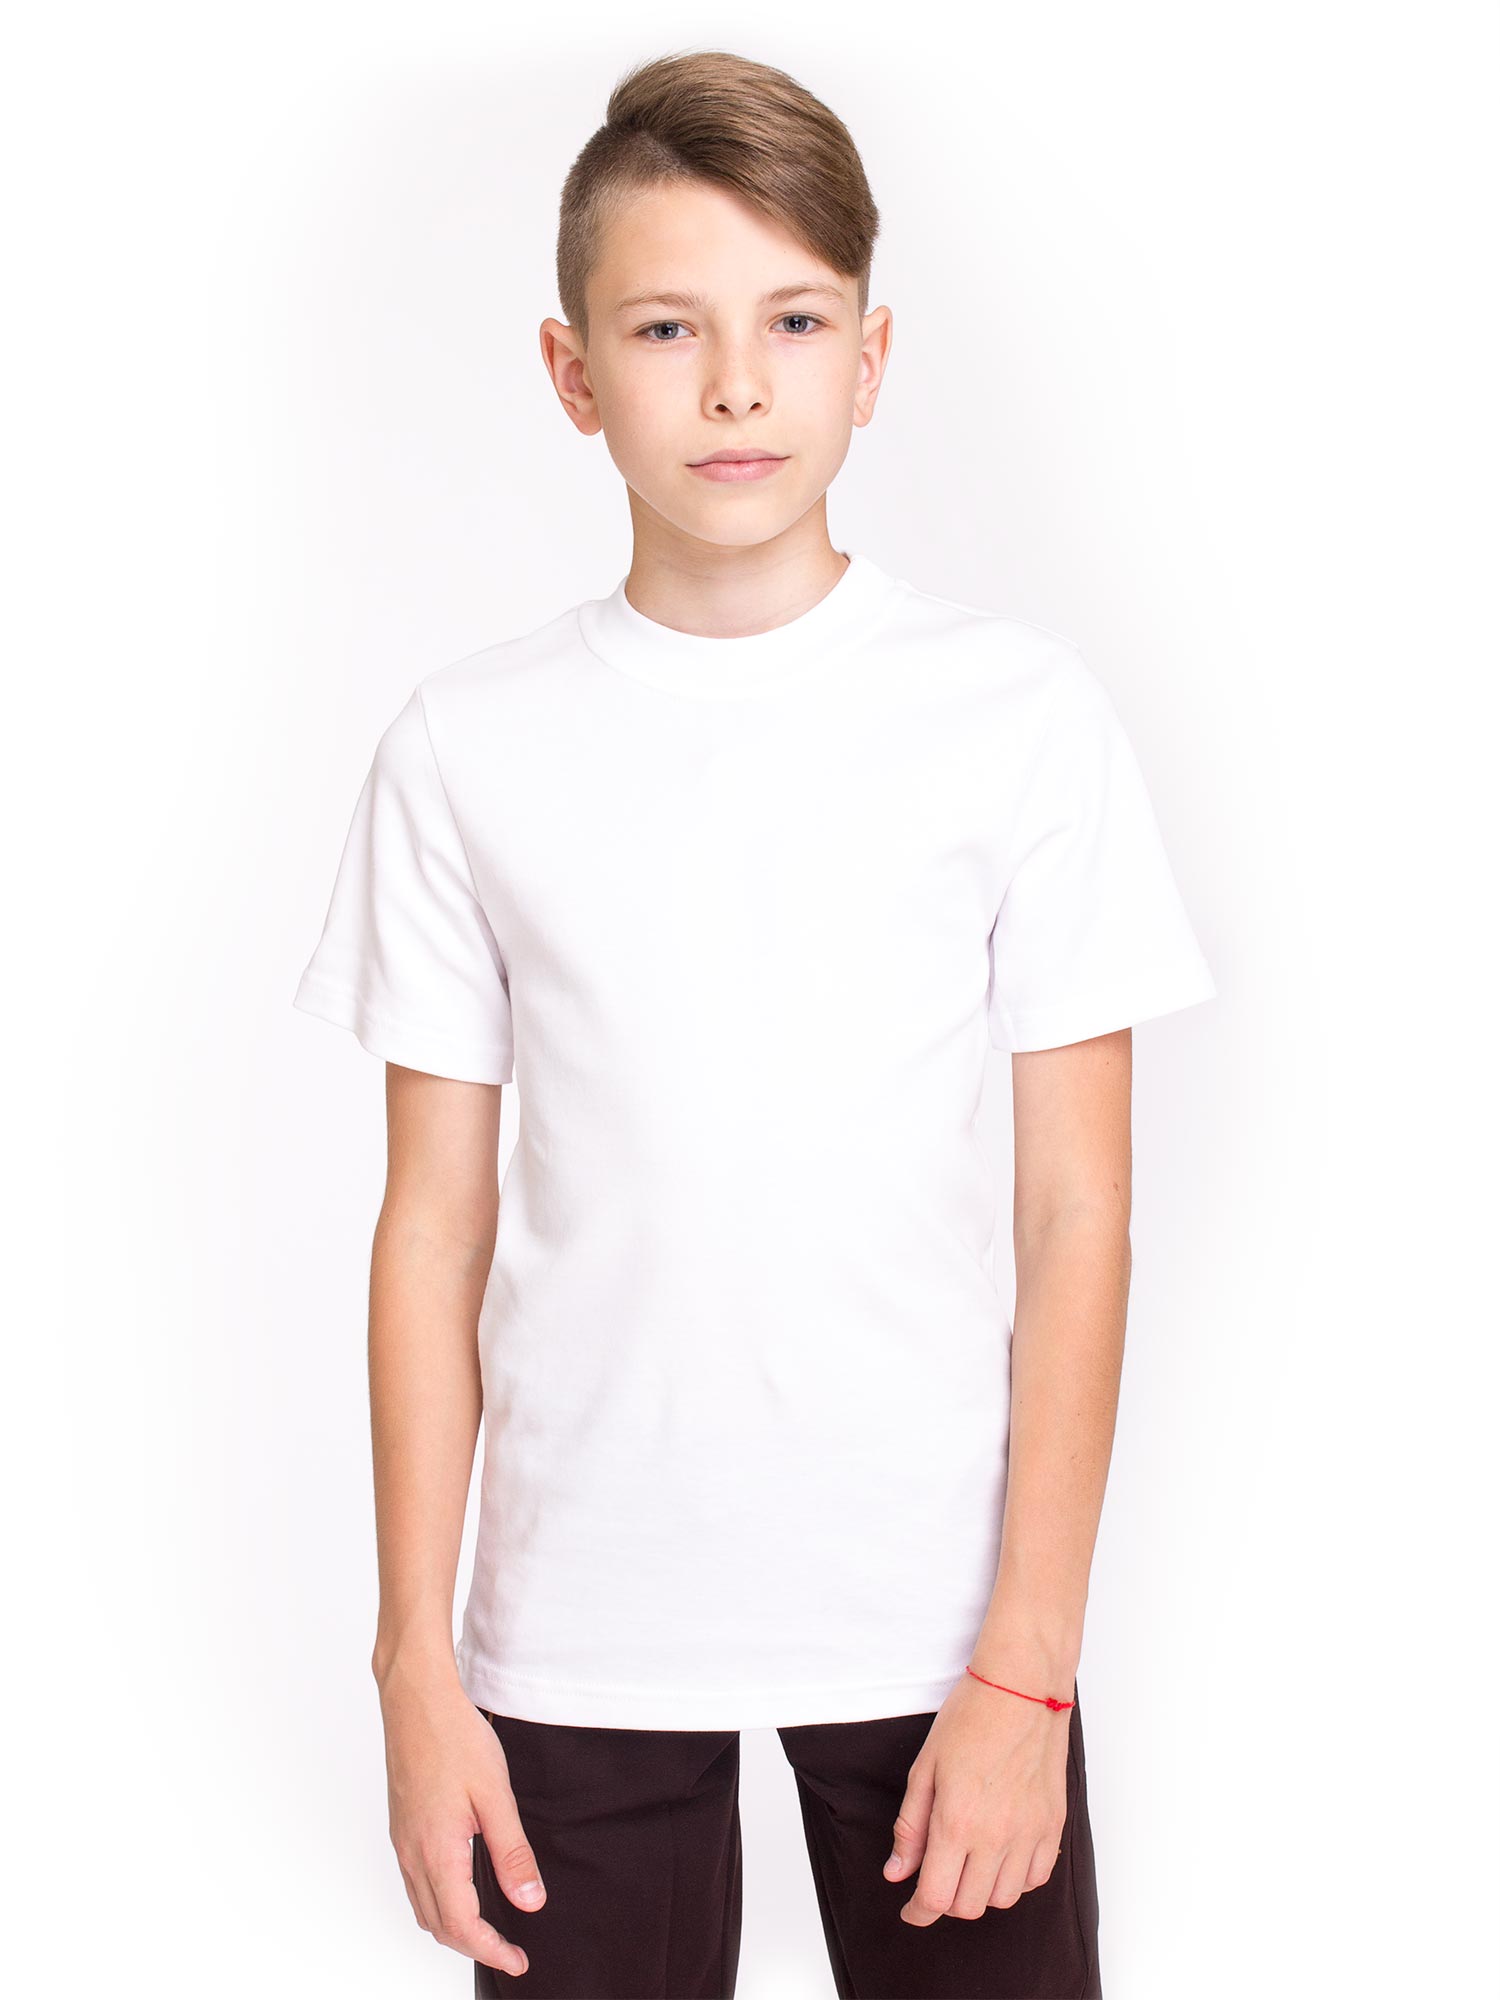 Белая детская футболка купить. Мальчик в белой футболке. "Детская белая футболка". Подросток в белой футболке. Белые футболки детские.